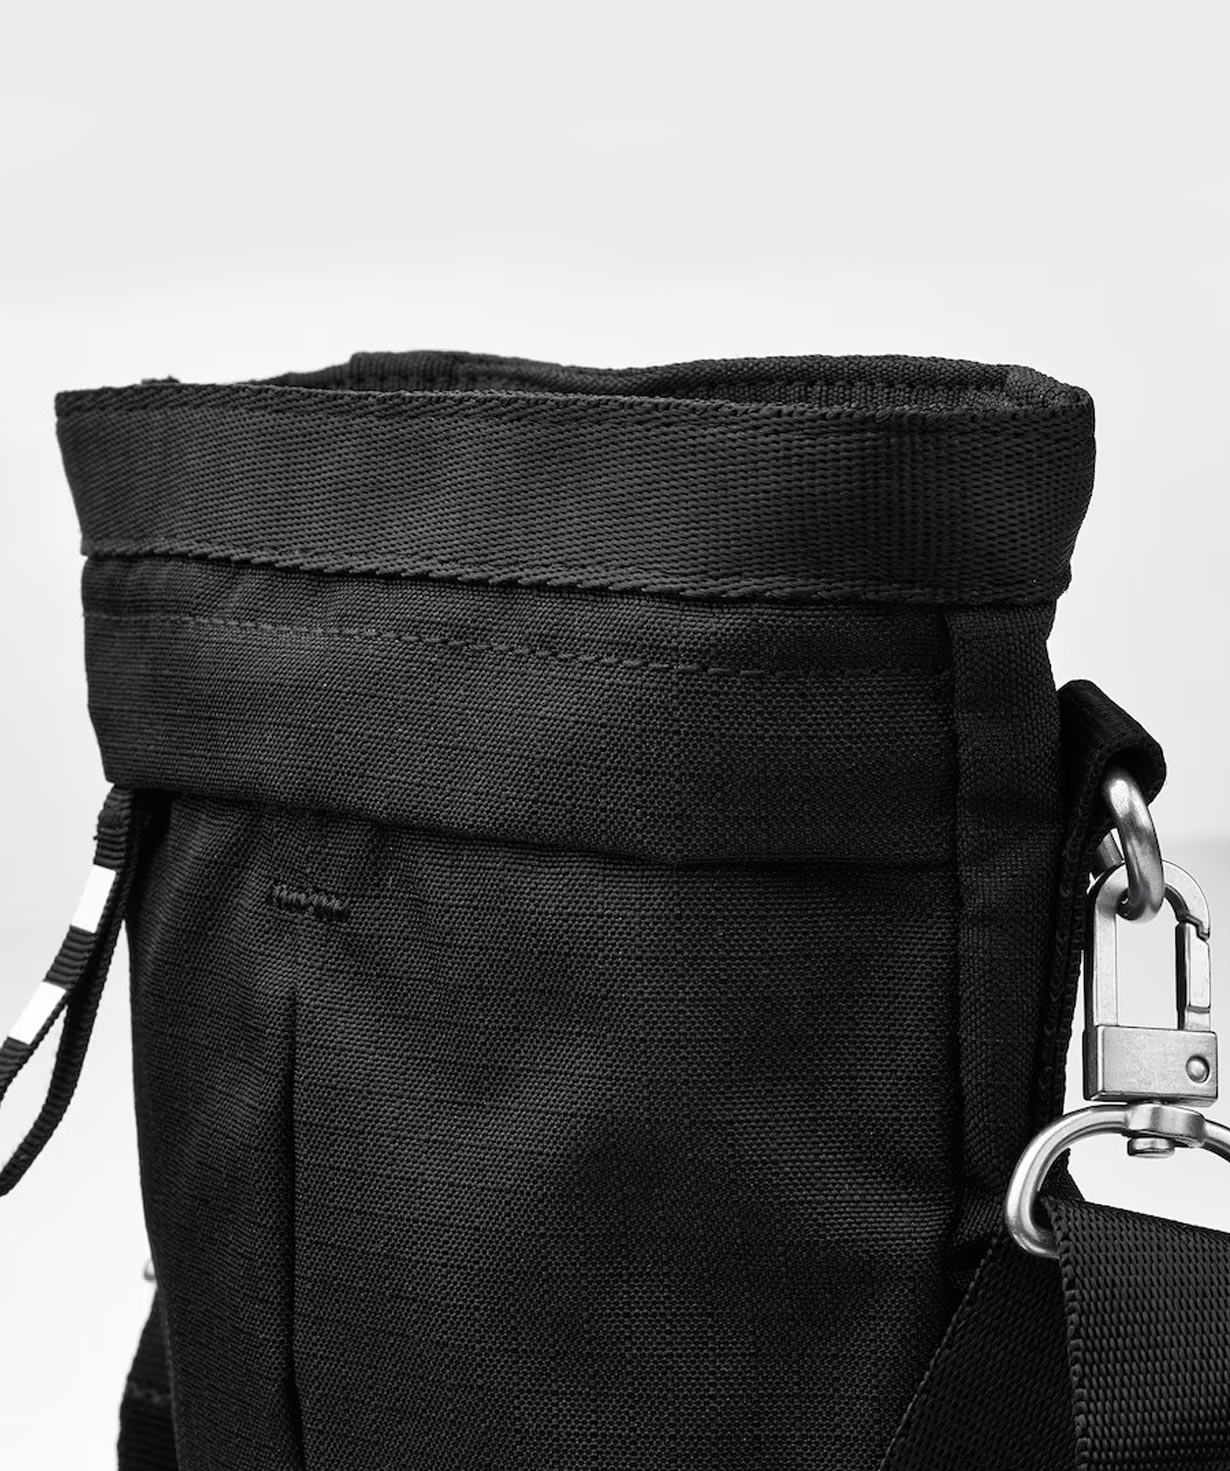 Crossbody bag ''VÄRLDENS'' black